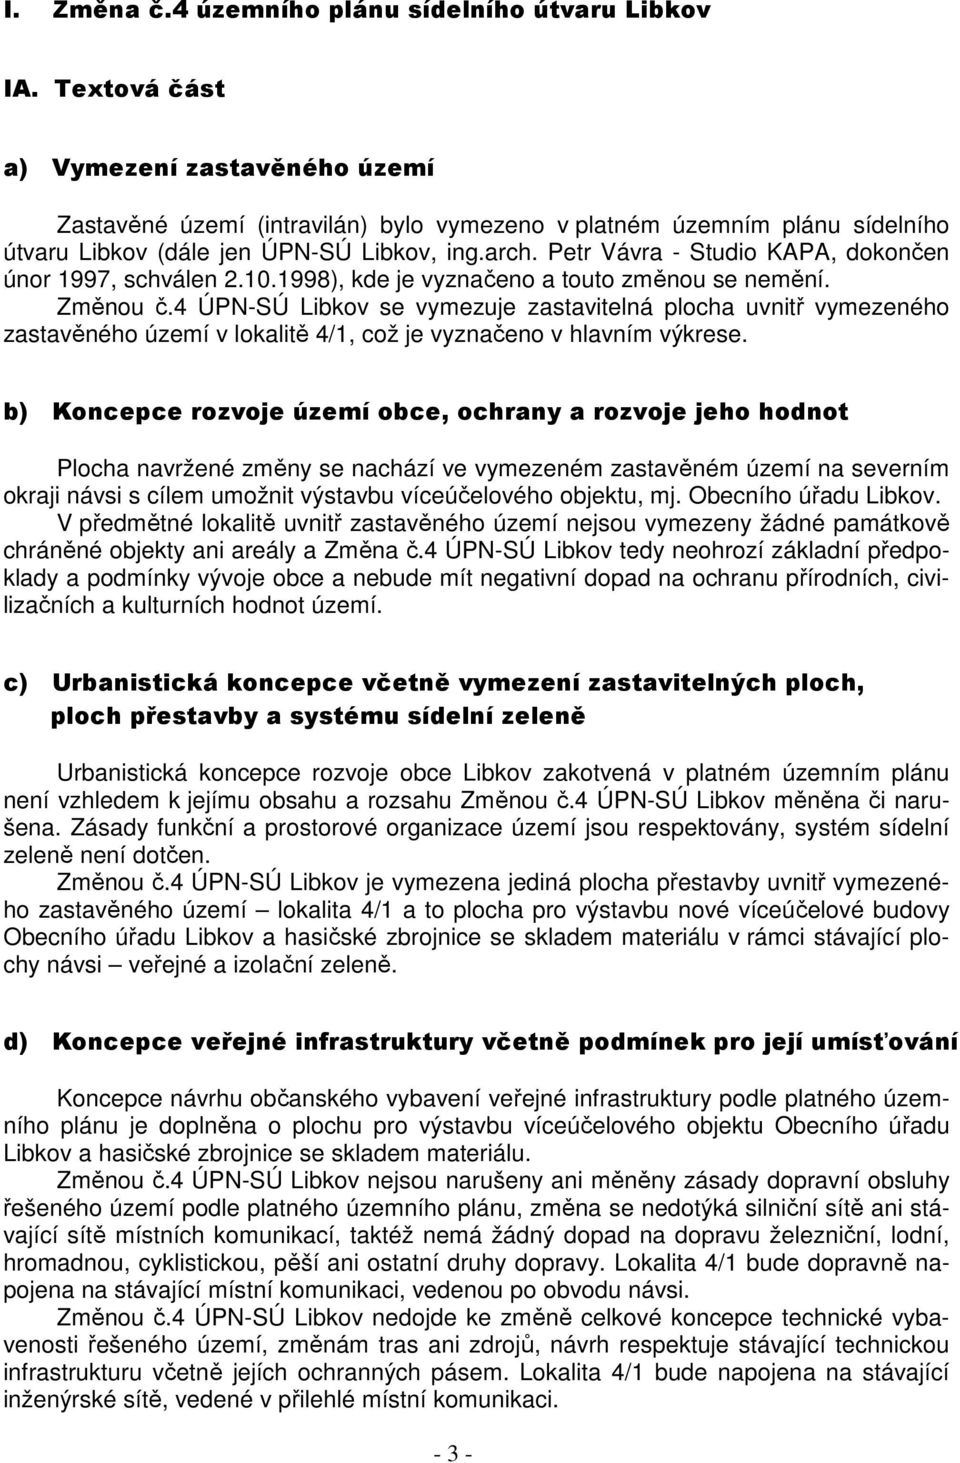 Petr Vávra - Studio KAPA, dokončen únor 1997, schválen 2.10.1998), kde je vyznačeno a touto změnou se nemění. Změnou č.